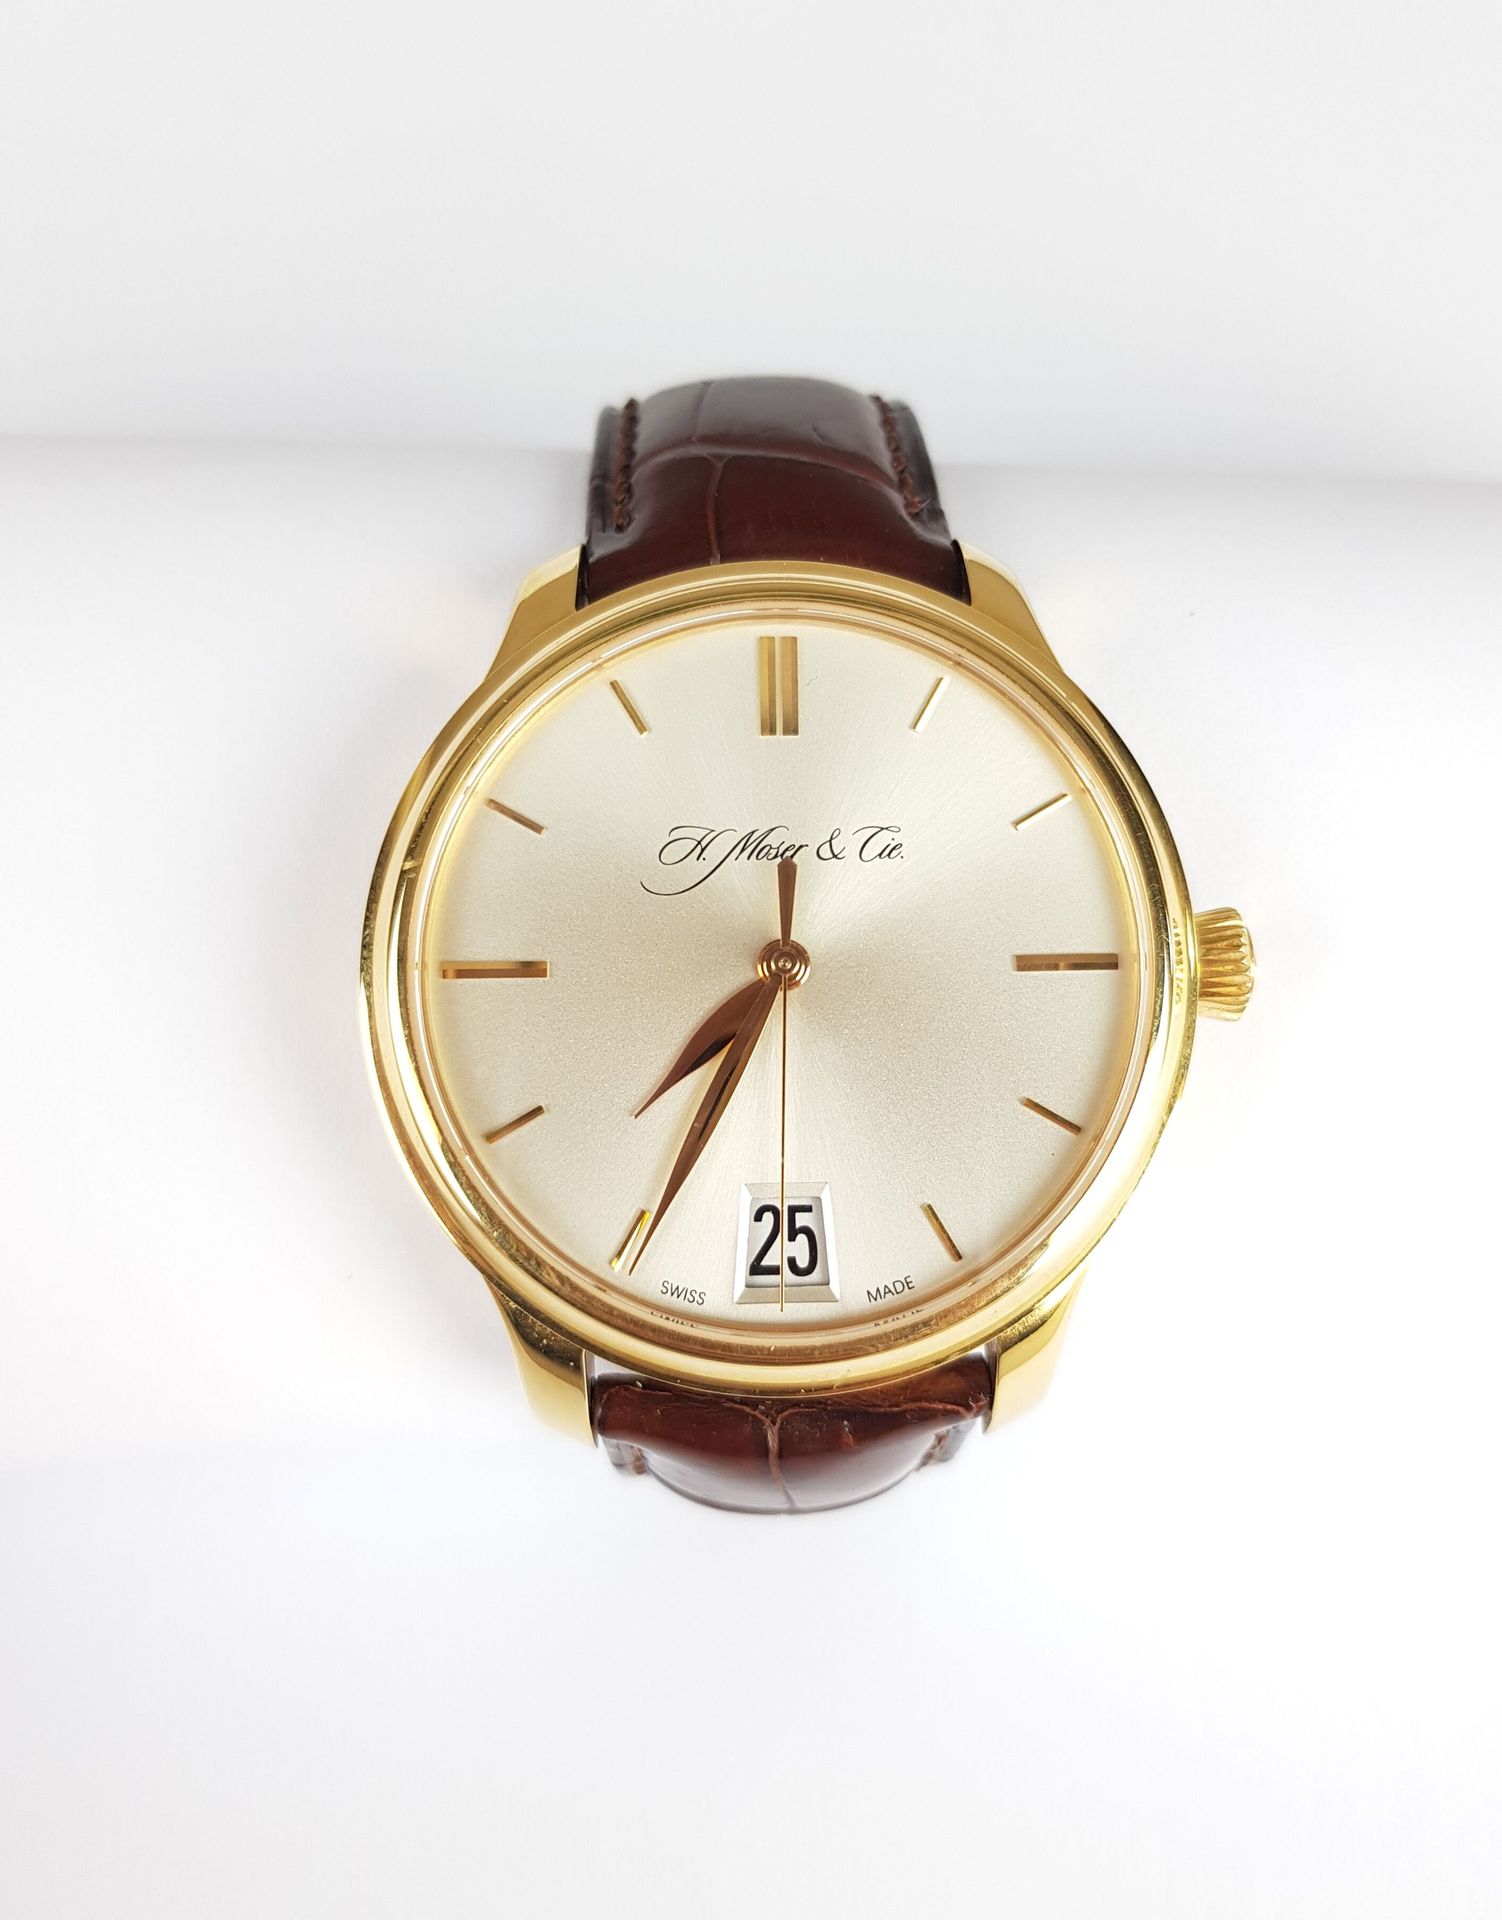 Null Gebot: 4.000 €.

H. MOSER & CIE

Uhr aus 750er Gelbgold, rundes, godroniert&hellip;